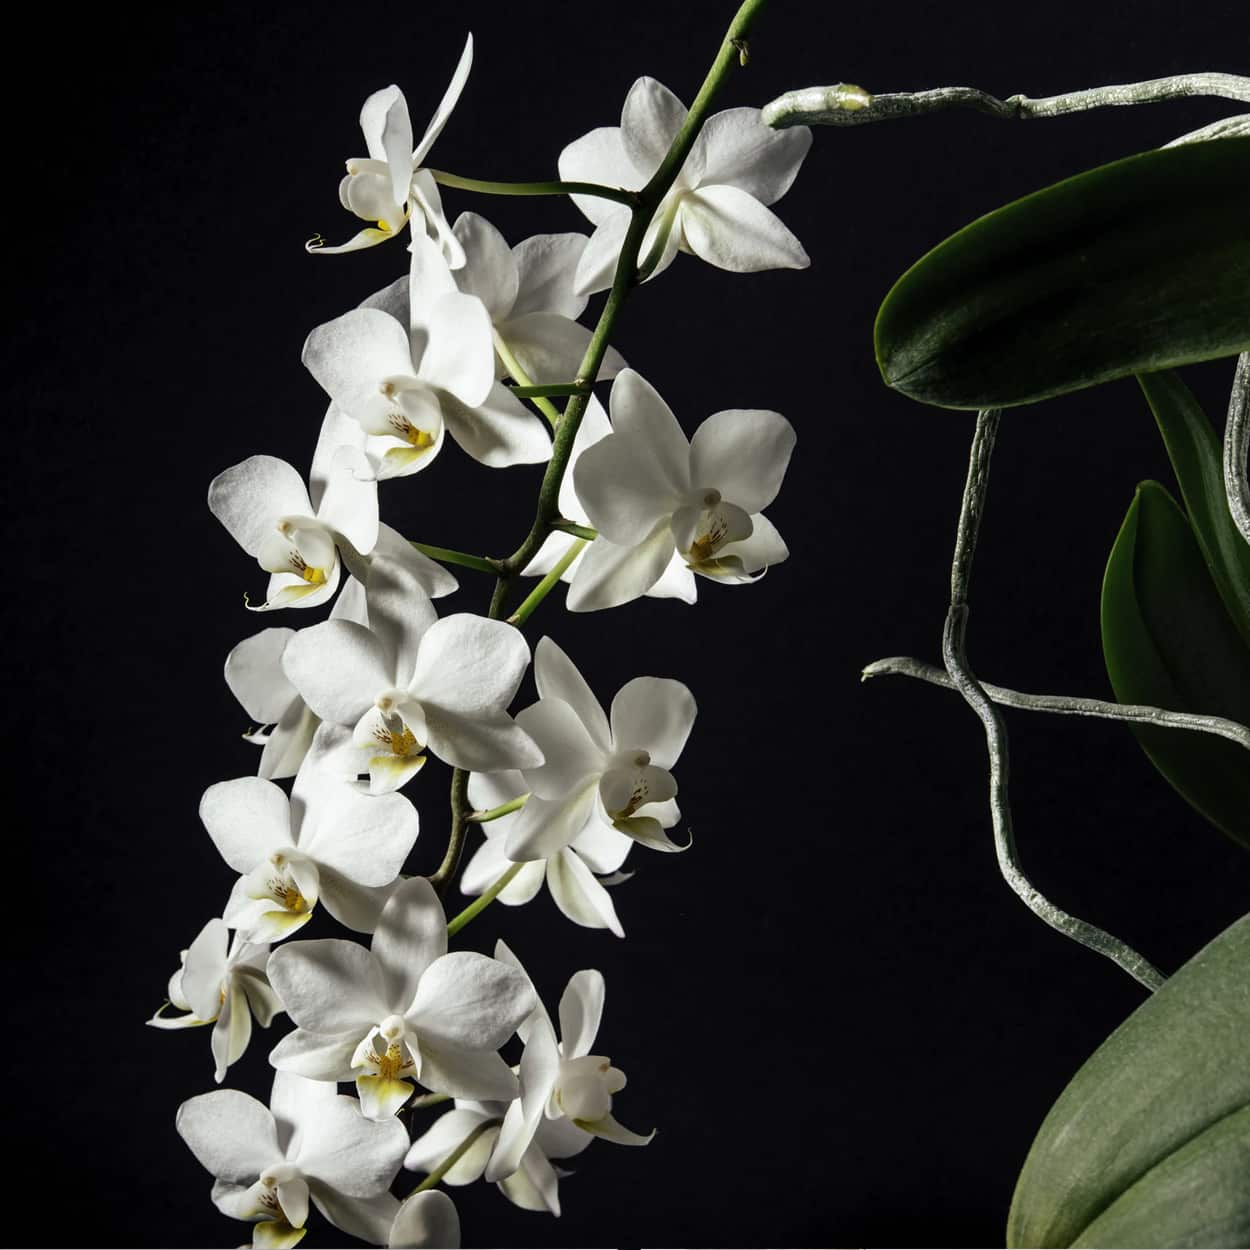 água oxigenada nas orquídeas